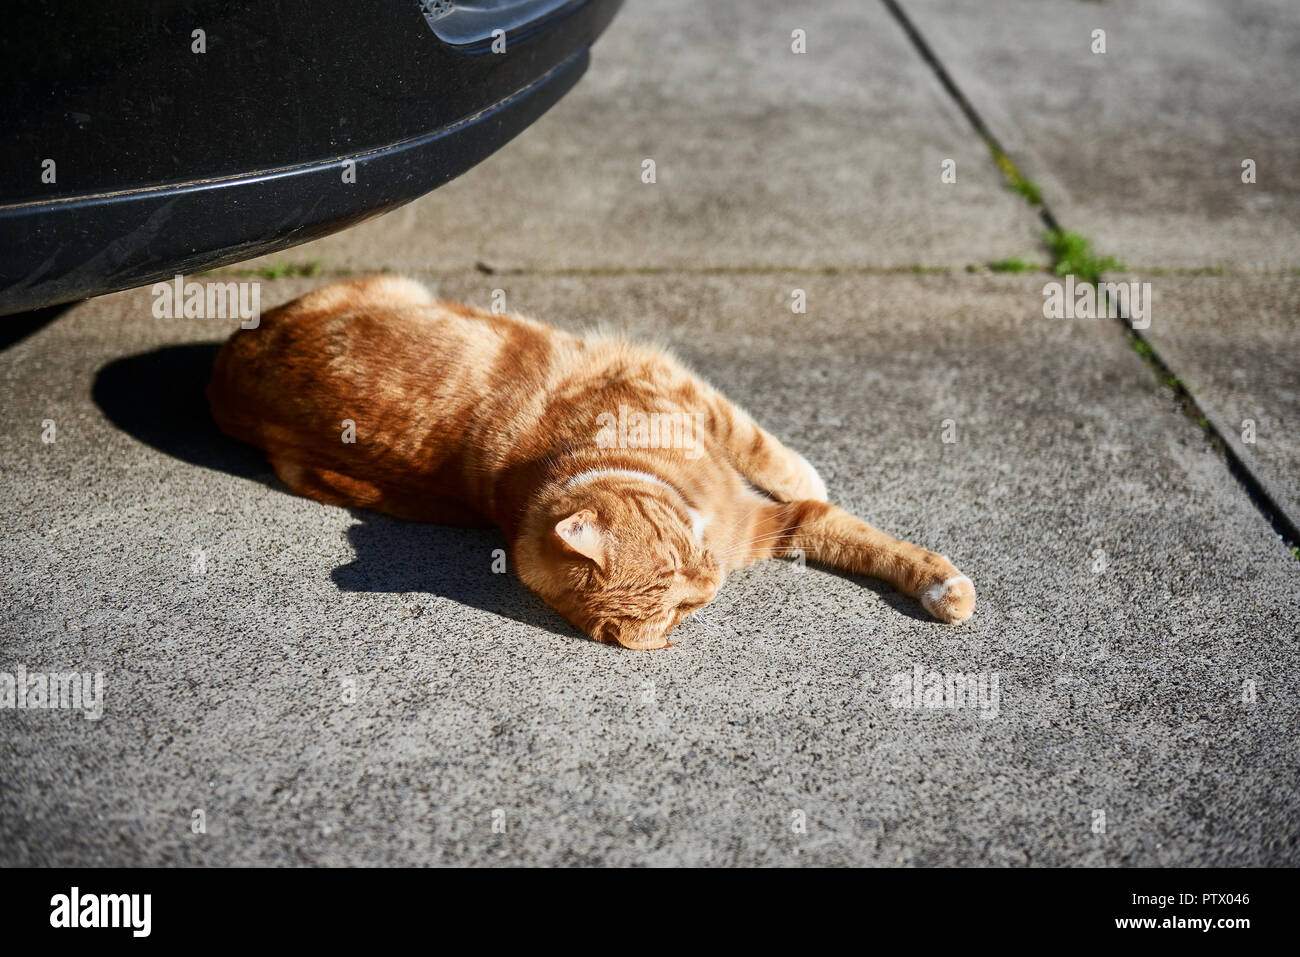 Red ginger tabby cat prendre sunny pan sur une allée en béton devant une voiture. Banque D'Images